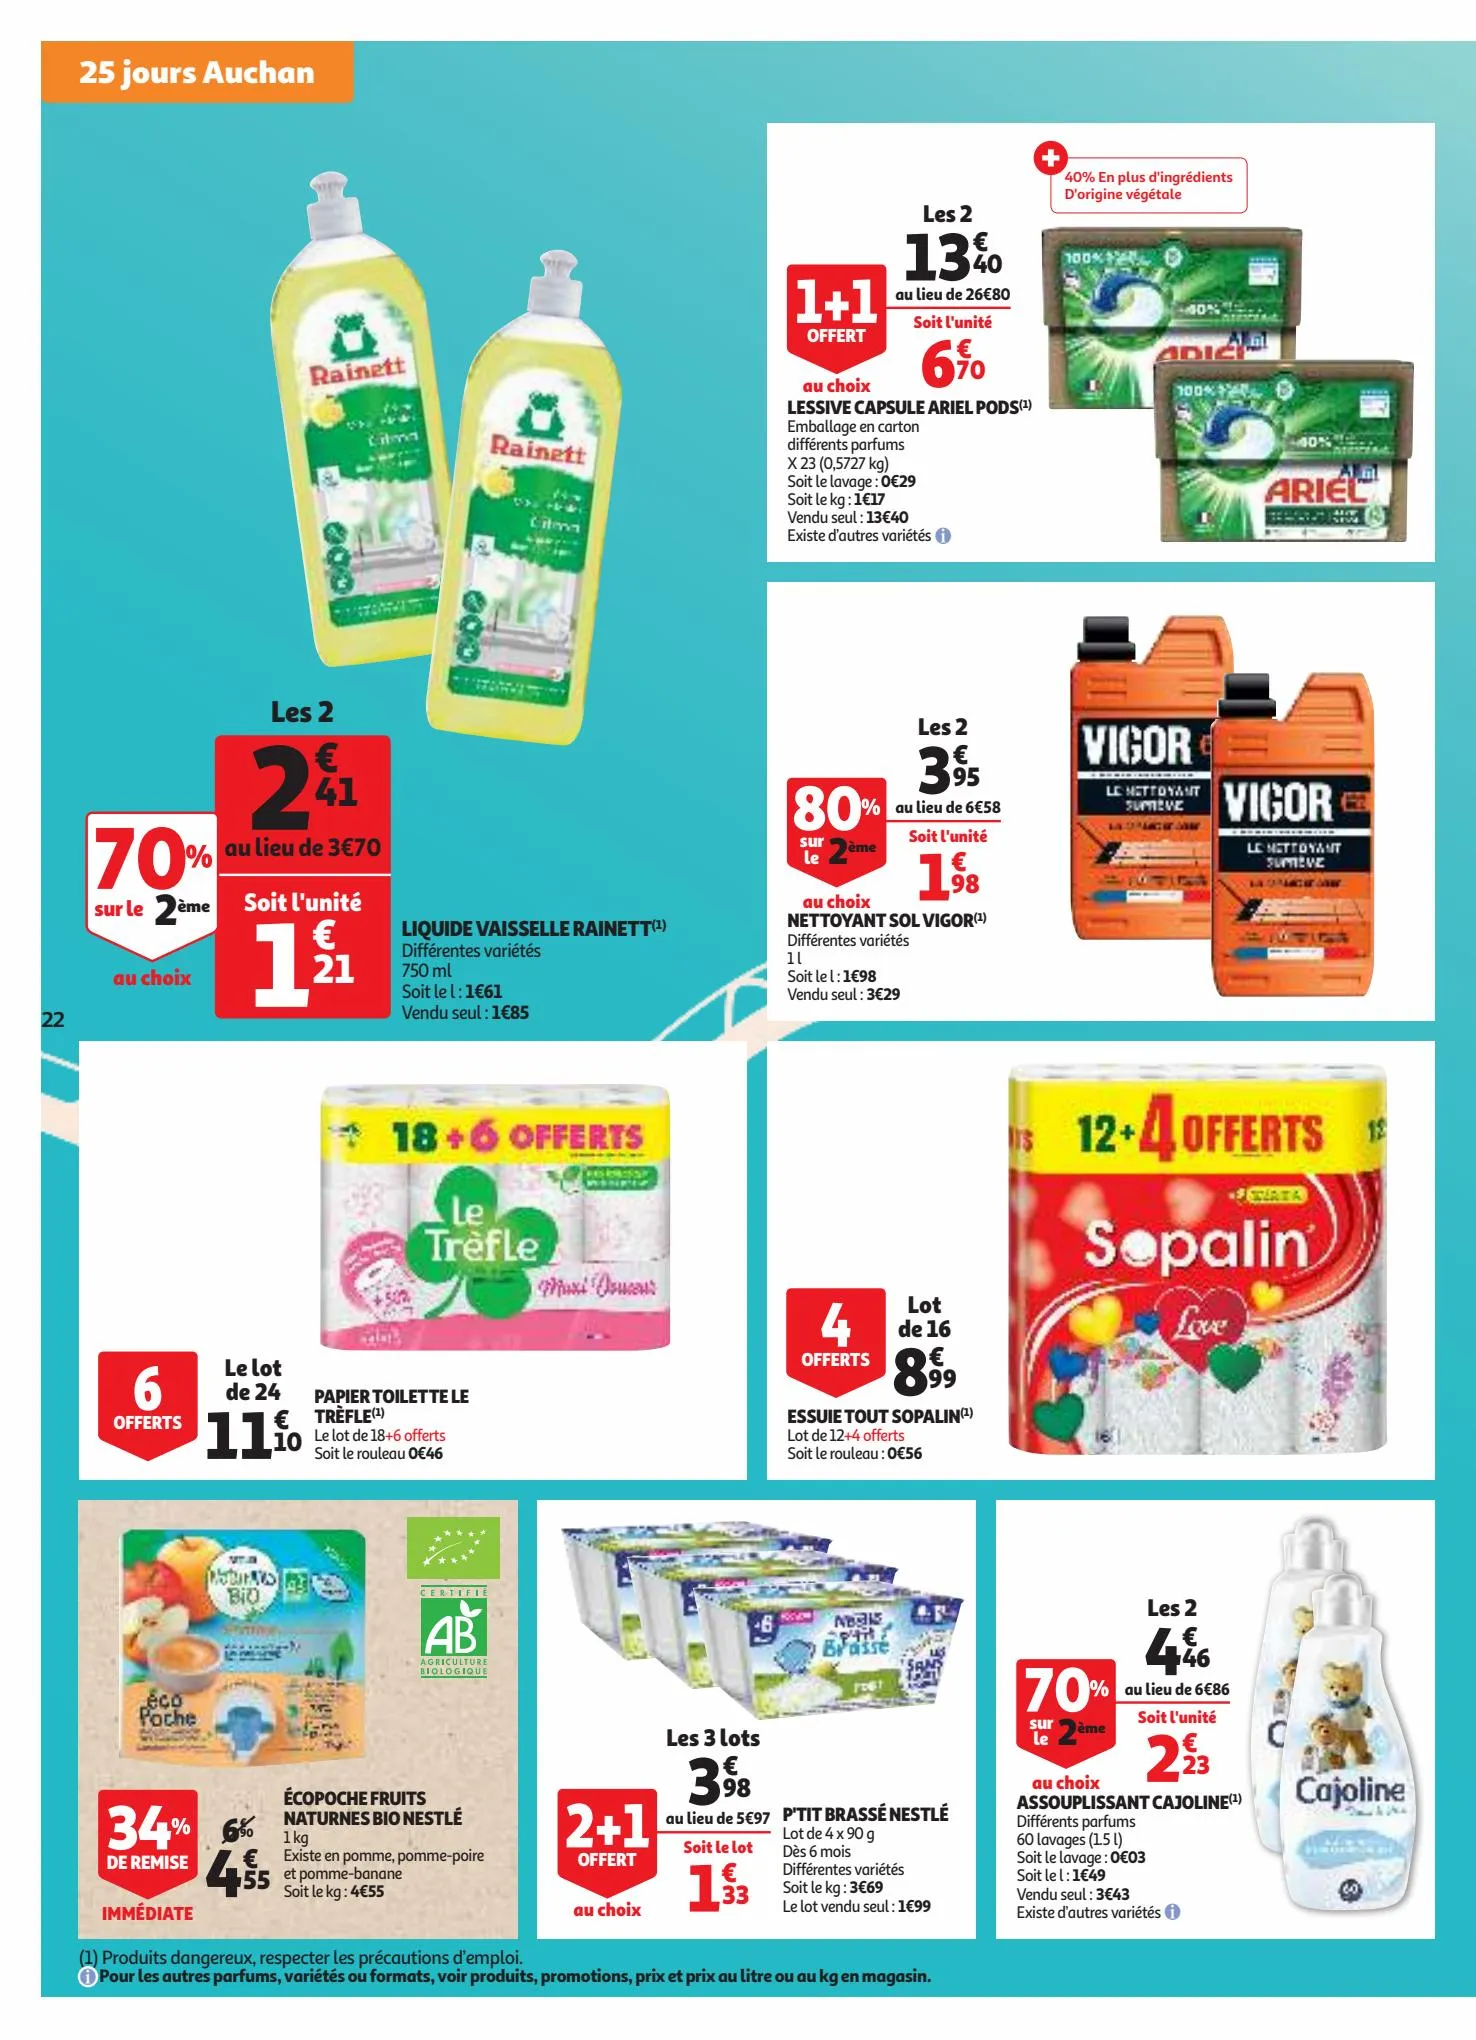 Catalogue 25 jours Auchan, page 00022